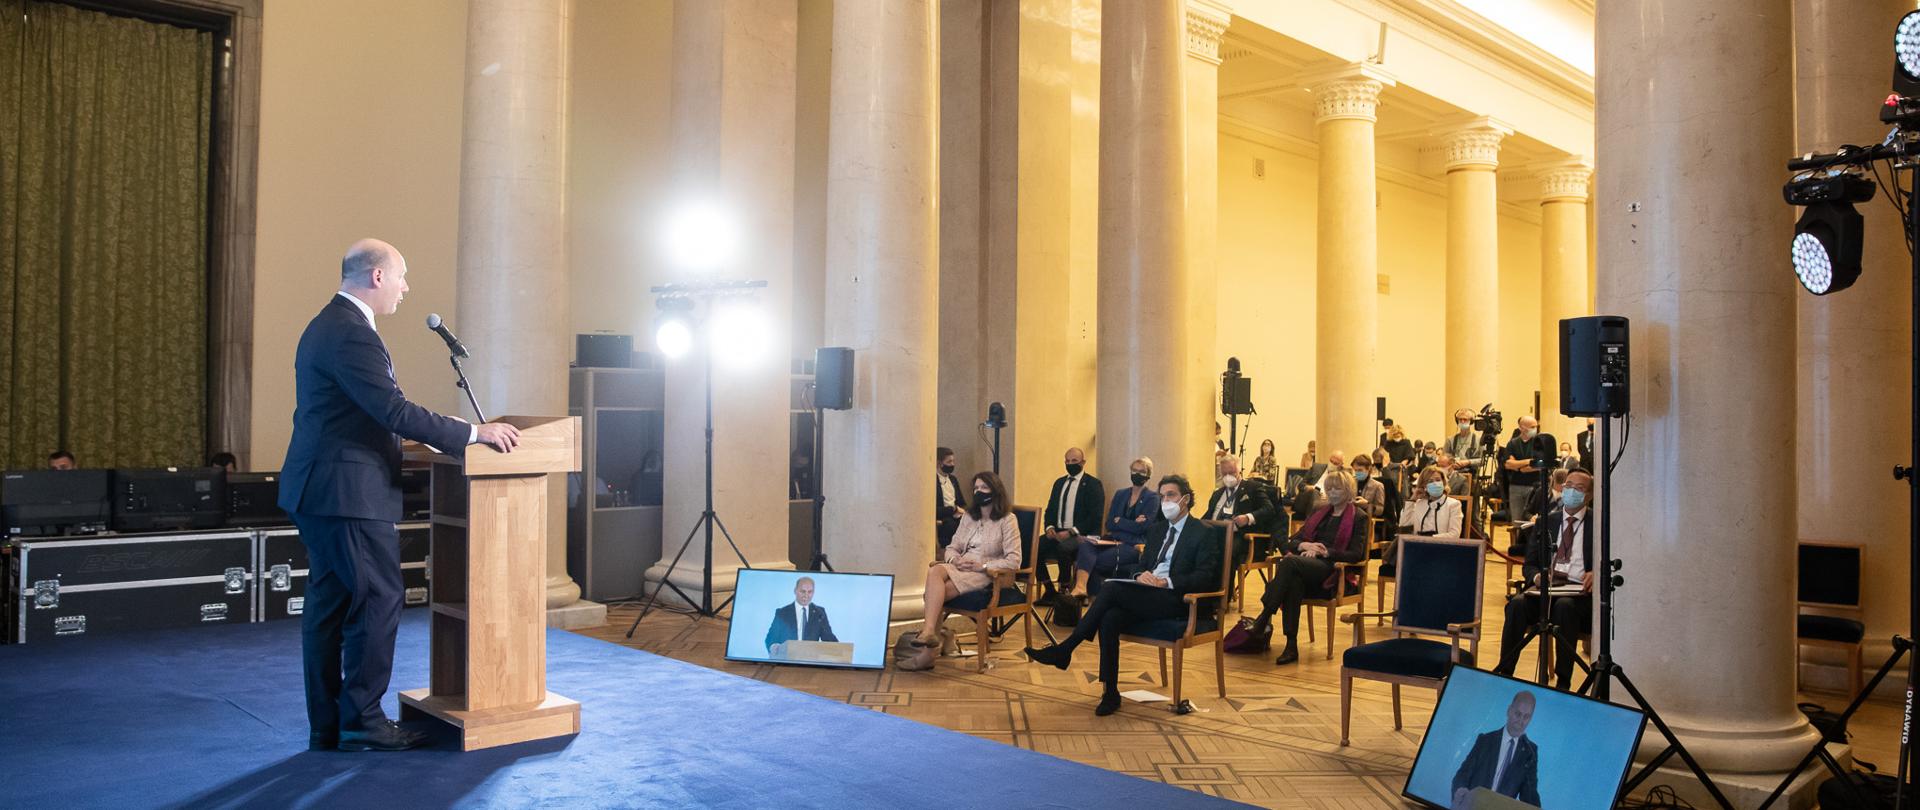 Wiceminister Szymon Szynkowski vel Sęk otworzył konferencję rocznicową Biura Instytucji Demokratycznych i Praw Człowieka OBWE 